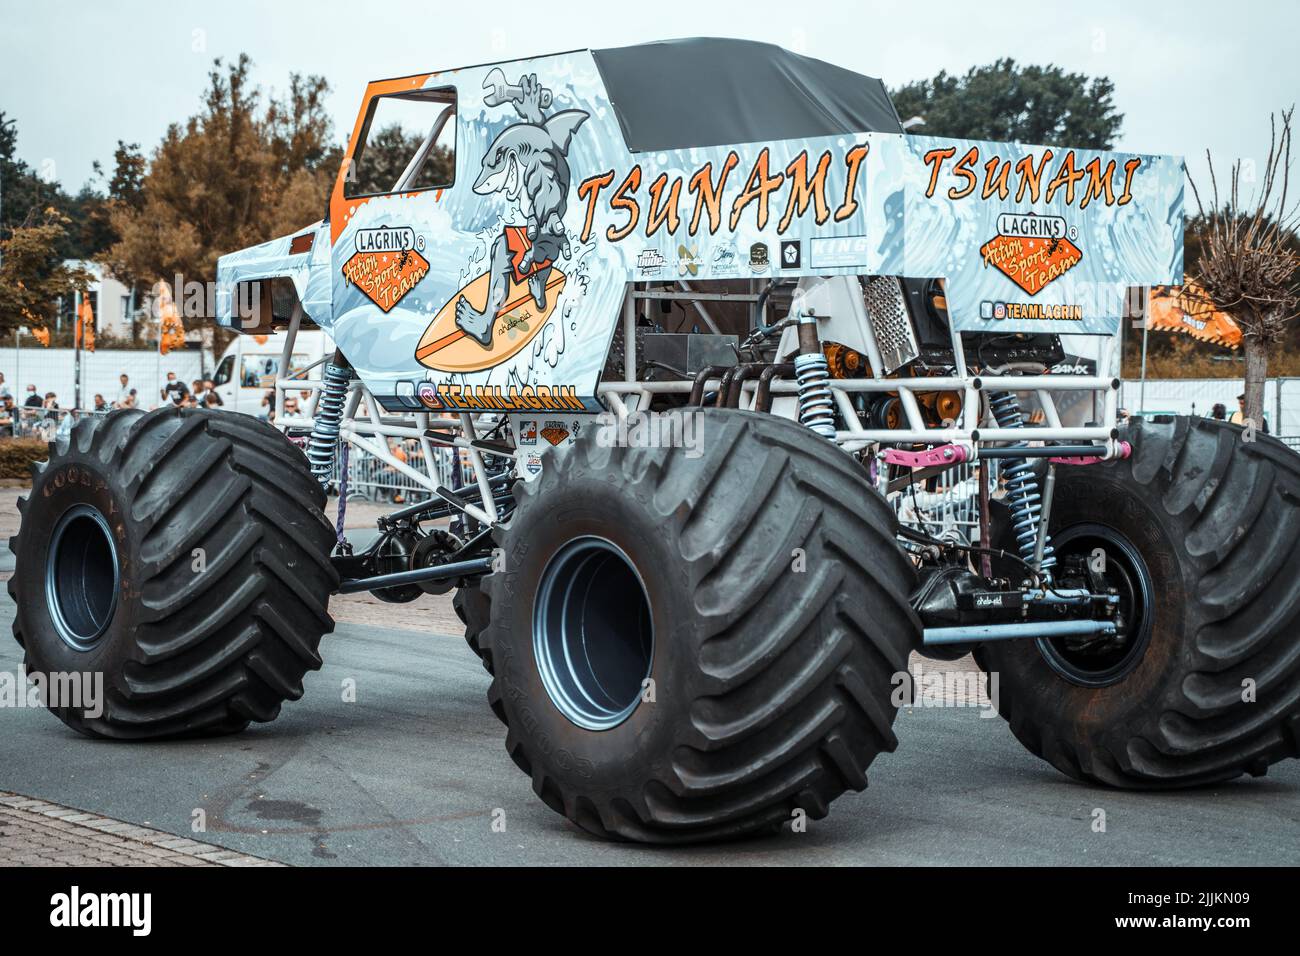 El monstruo de camión en la exposición del equipo Action Sport Team de Lagrin en Lohne, Alemania. Foto de stock